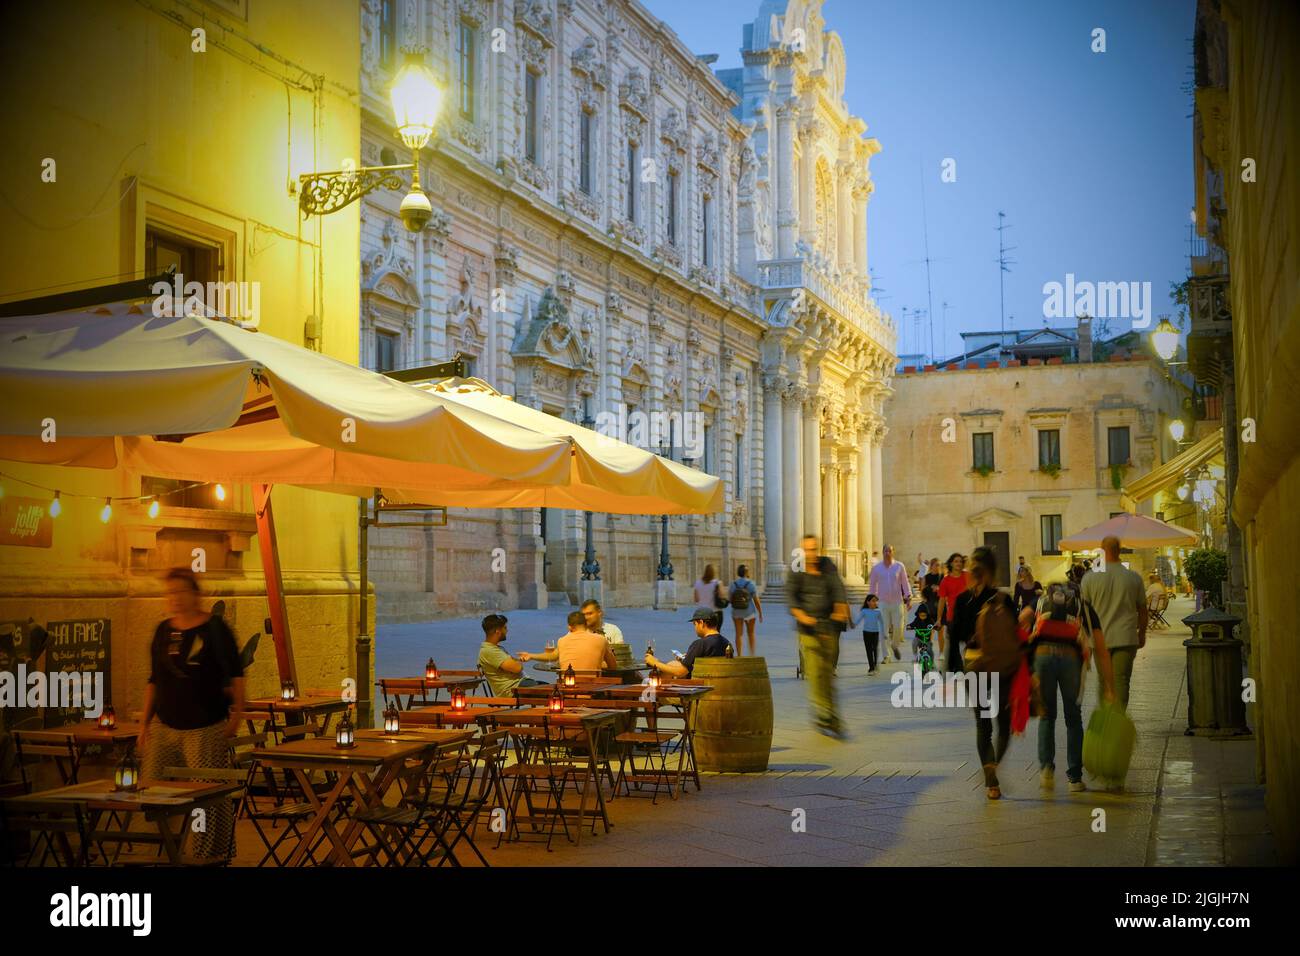 Plaza et cafés autour de Basilica di Santa Croce, Lecce, Puglia, Italie Banque D'Images